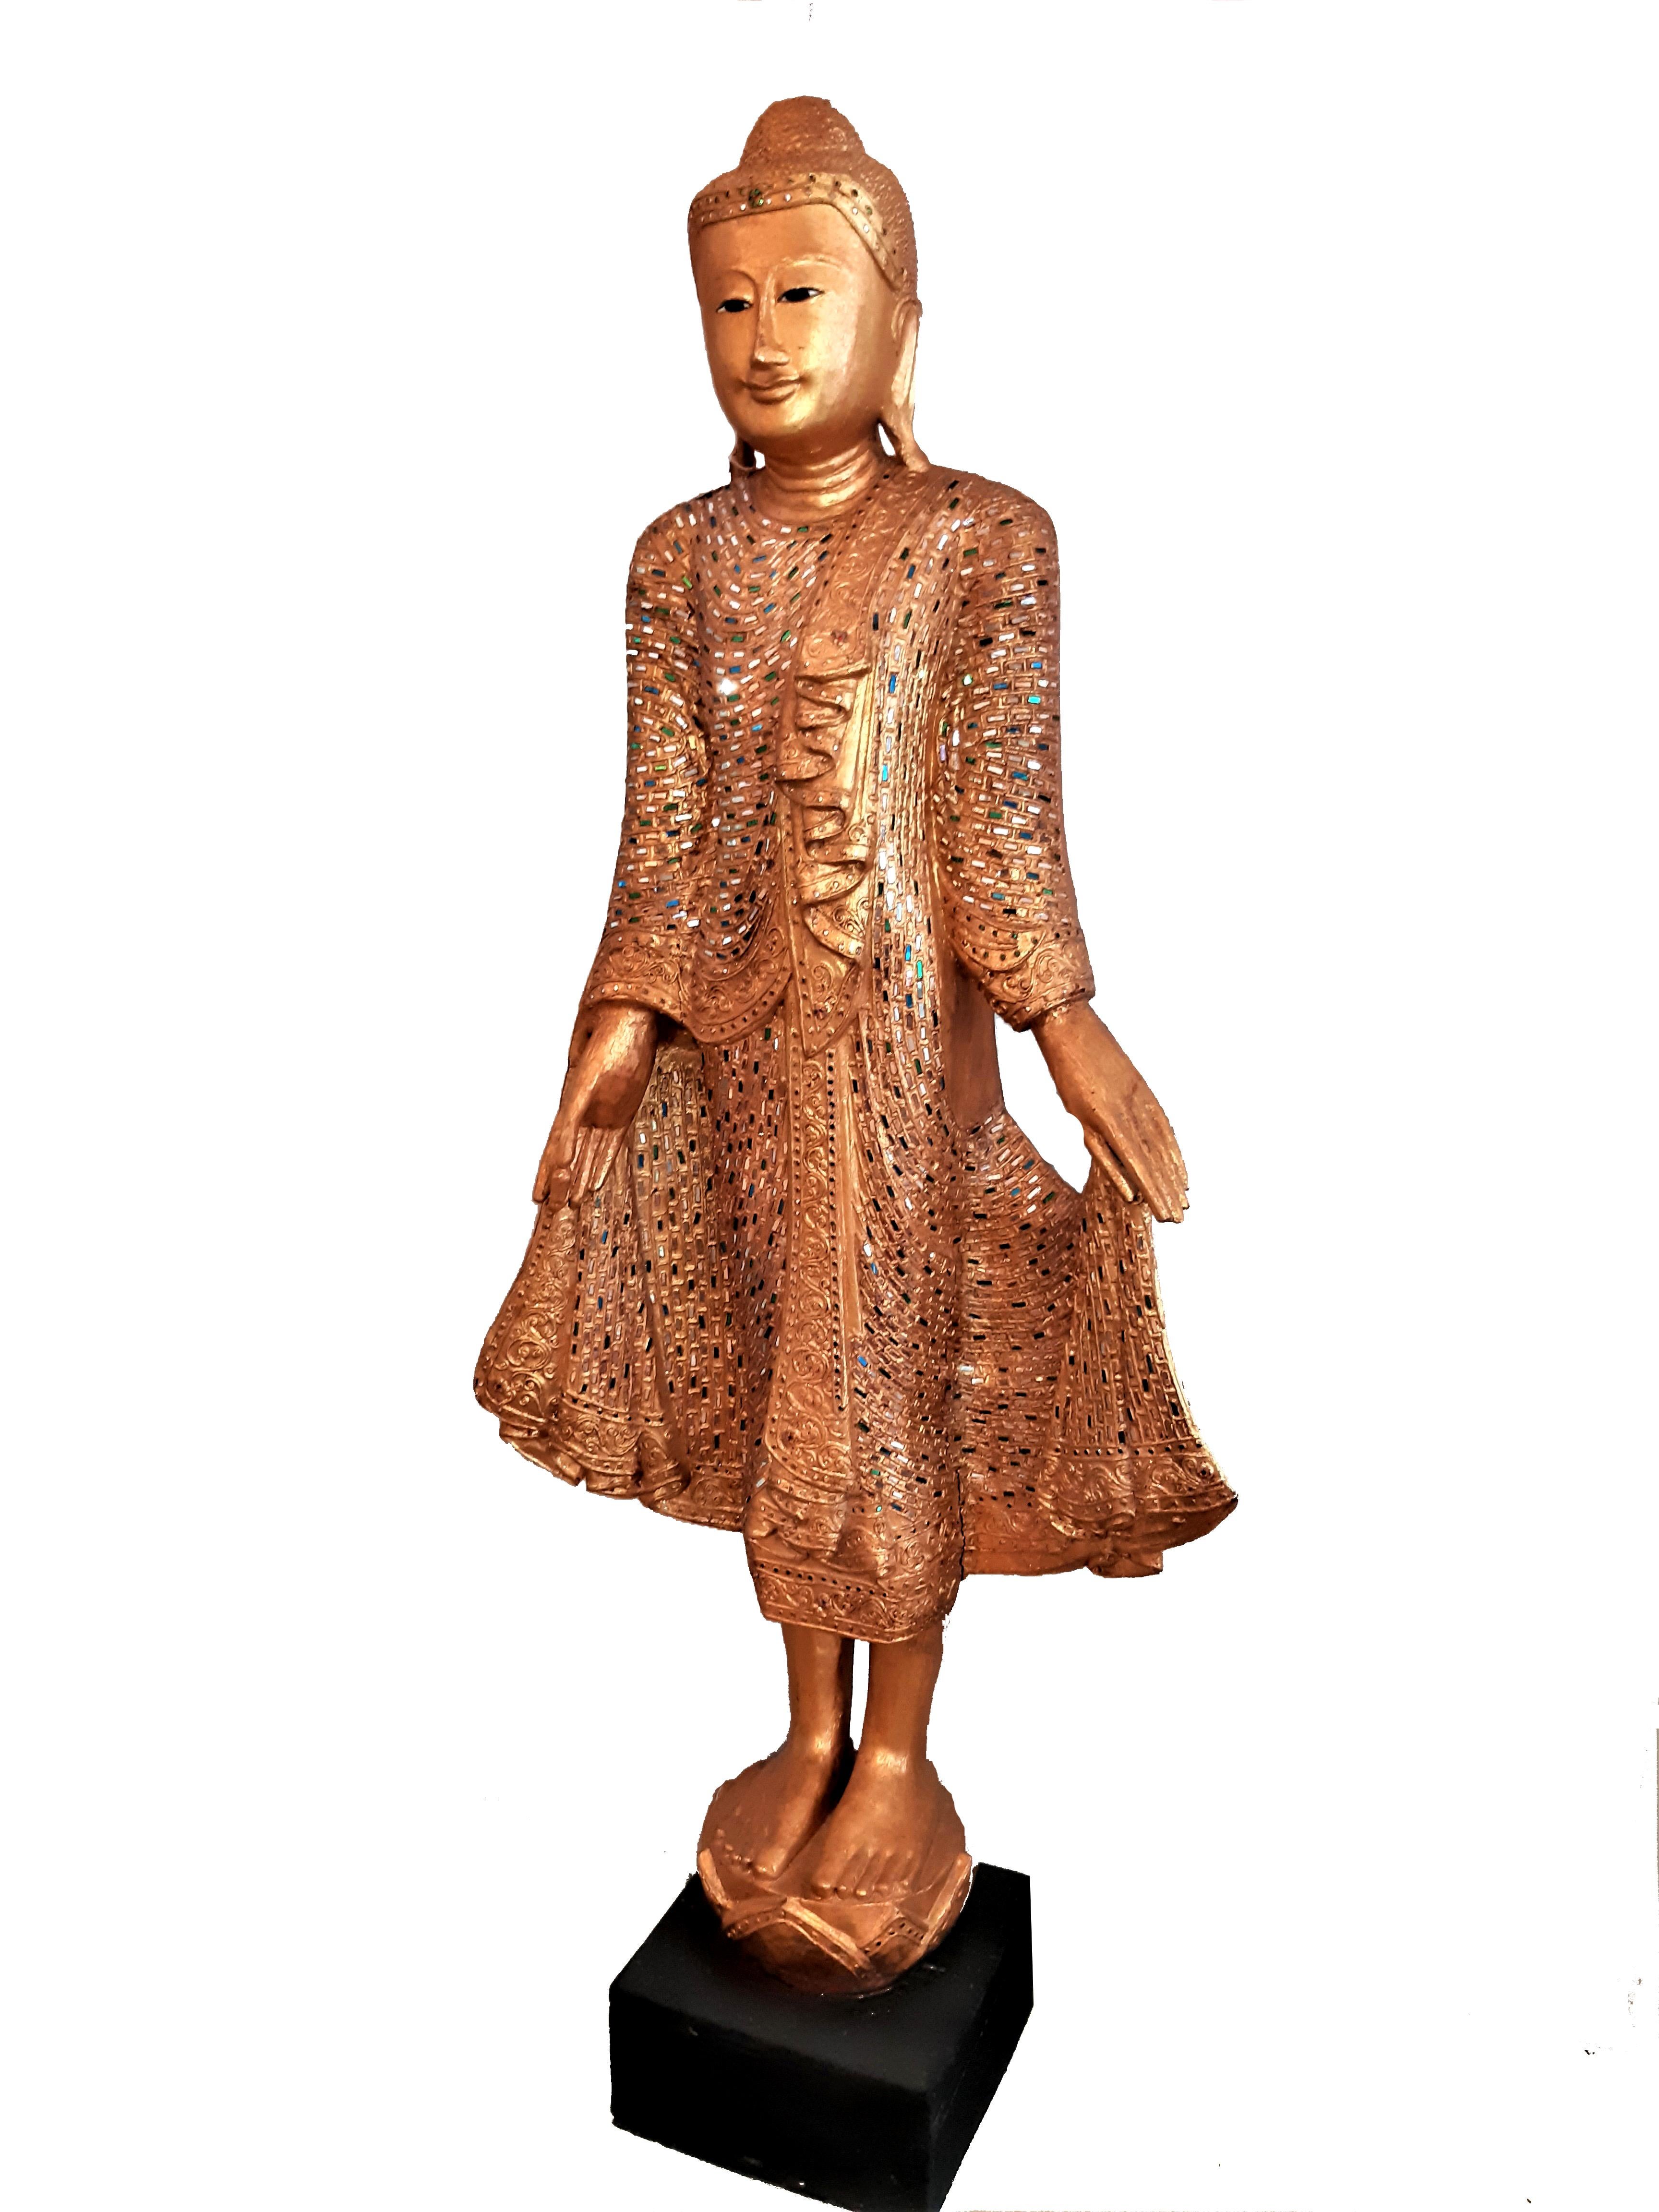 2x Skulptur Holzschnitzerei von Buddha Mandalay  

Mit reichhaltiger Bemalung / Steinebesatz. Taille 168cm, en parfait état, sans aucune altération. Wohl aus den ca. 1970er Jahren

